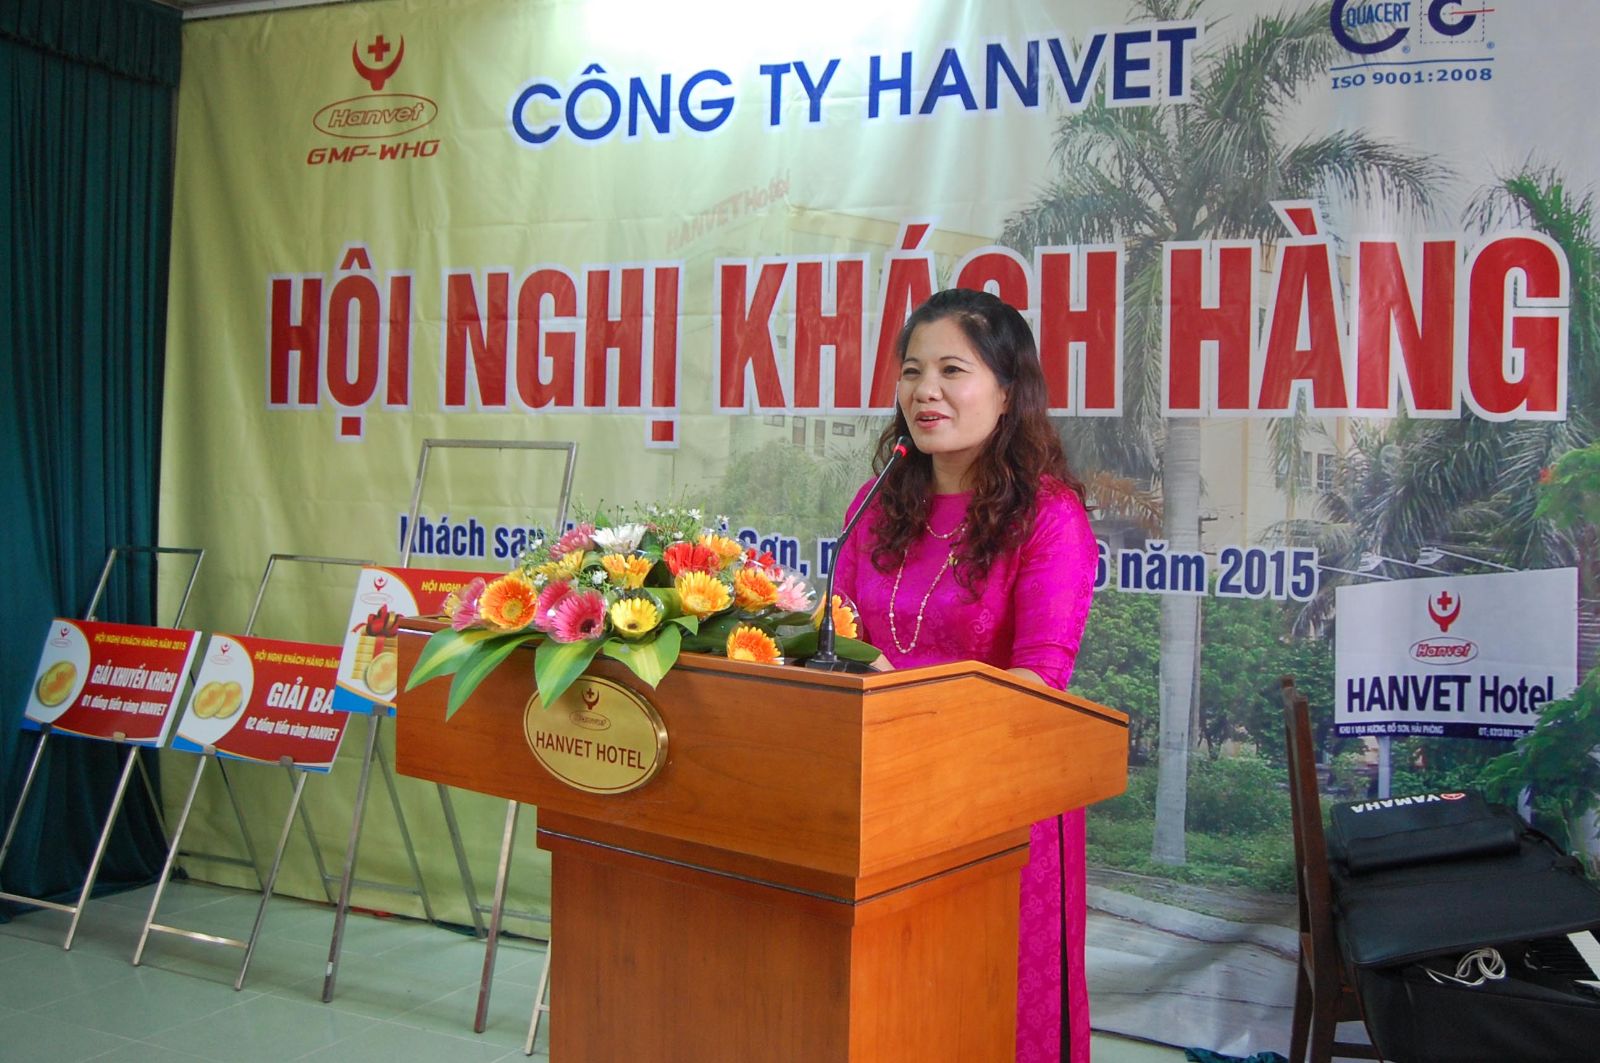 Hội nghị khách hàng 2015 của công ty Hanvet- Tại Khách sạn Hanvet - Đồ Sơn, Hải Phòng